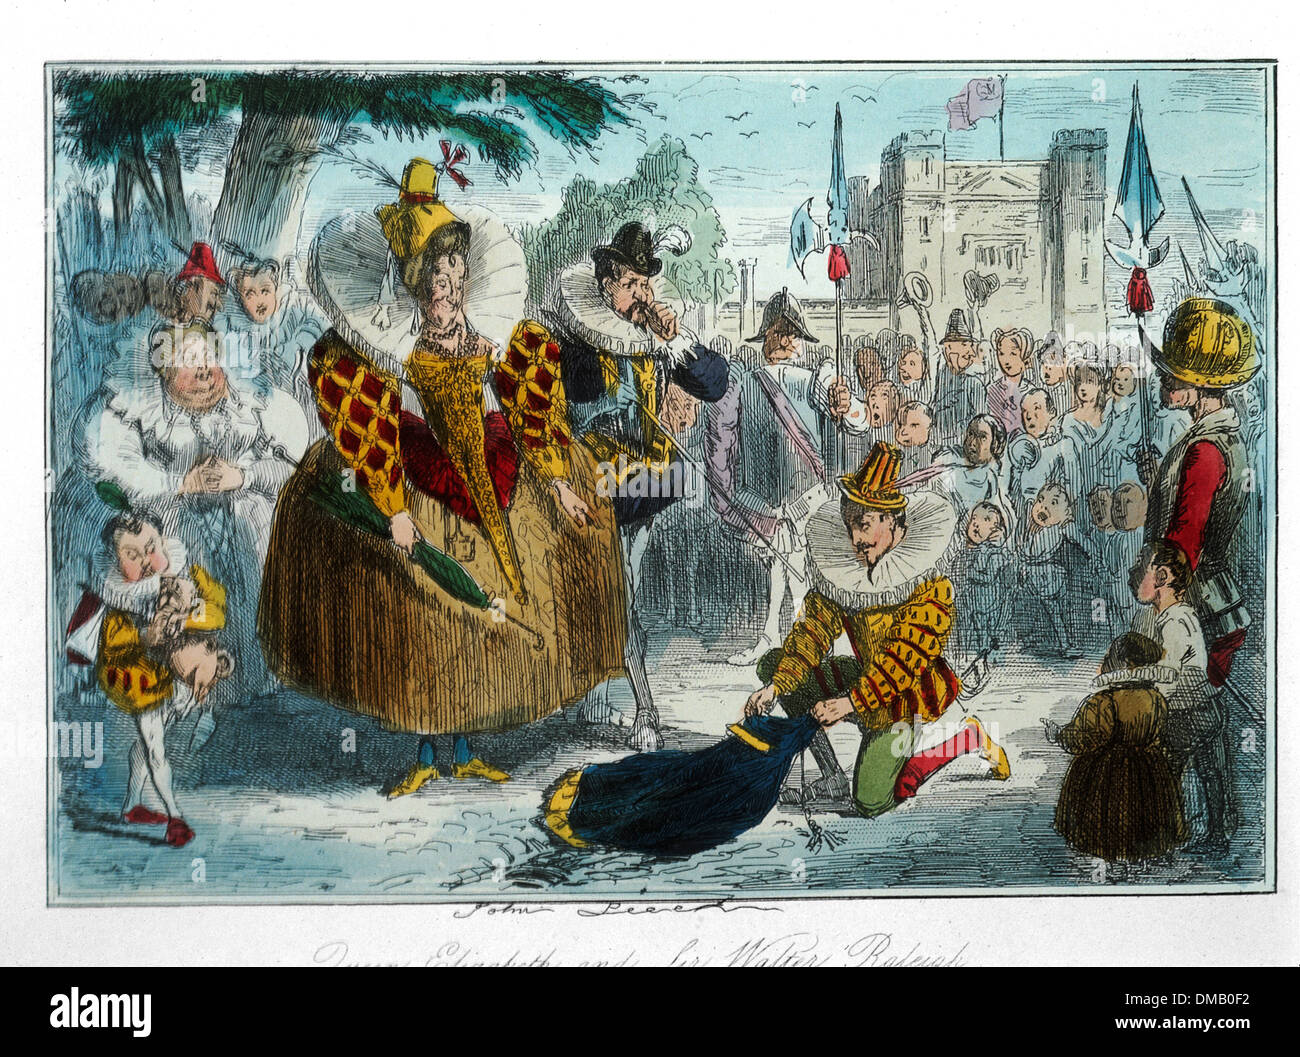 Queen Elizabeth y Sir Walter Raleigh, cómico de la historia de Inglaterra, de color grabado por John Leech, 1850 Foto de stock